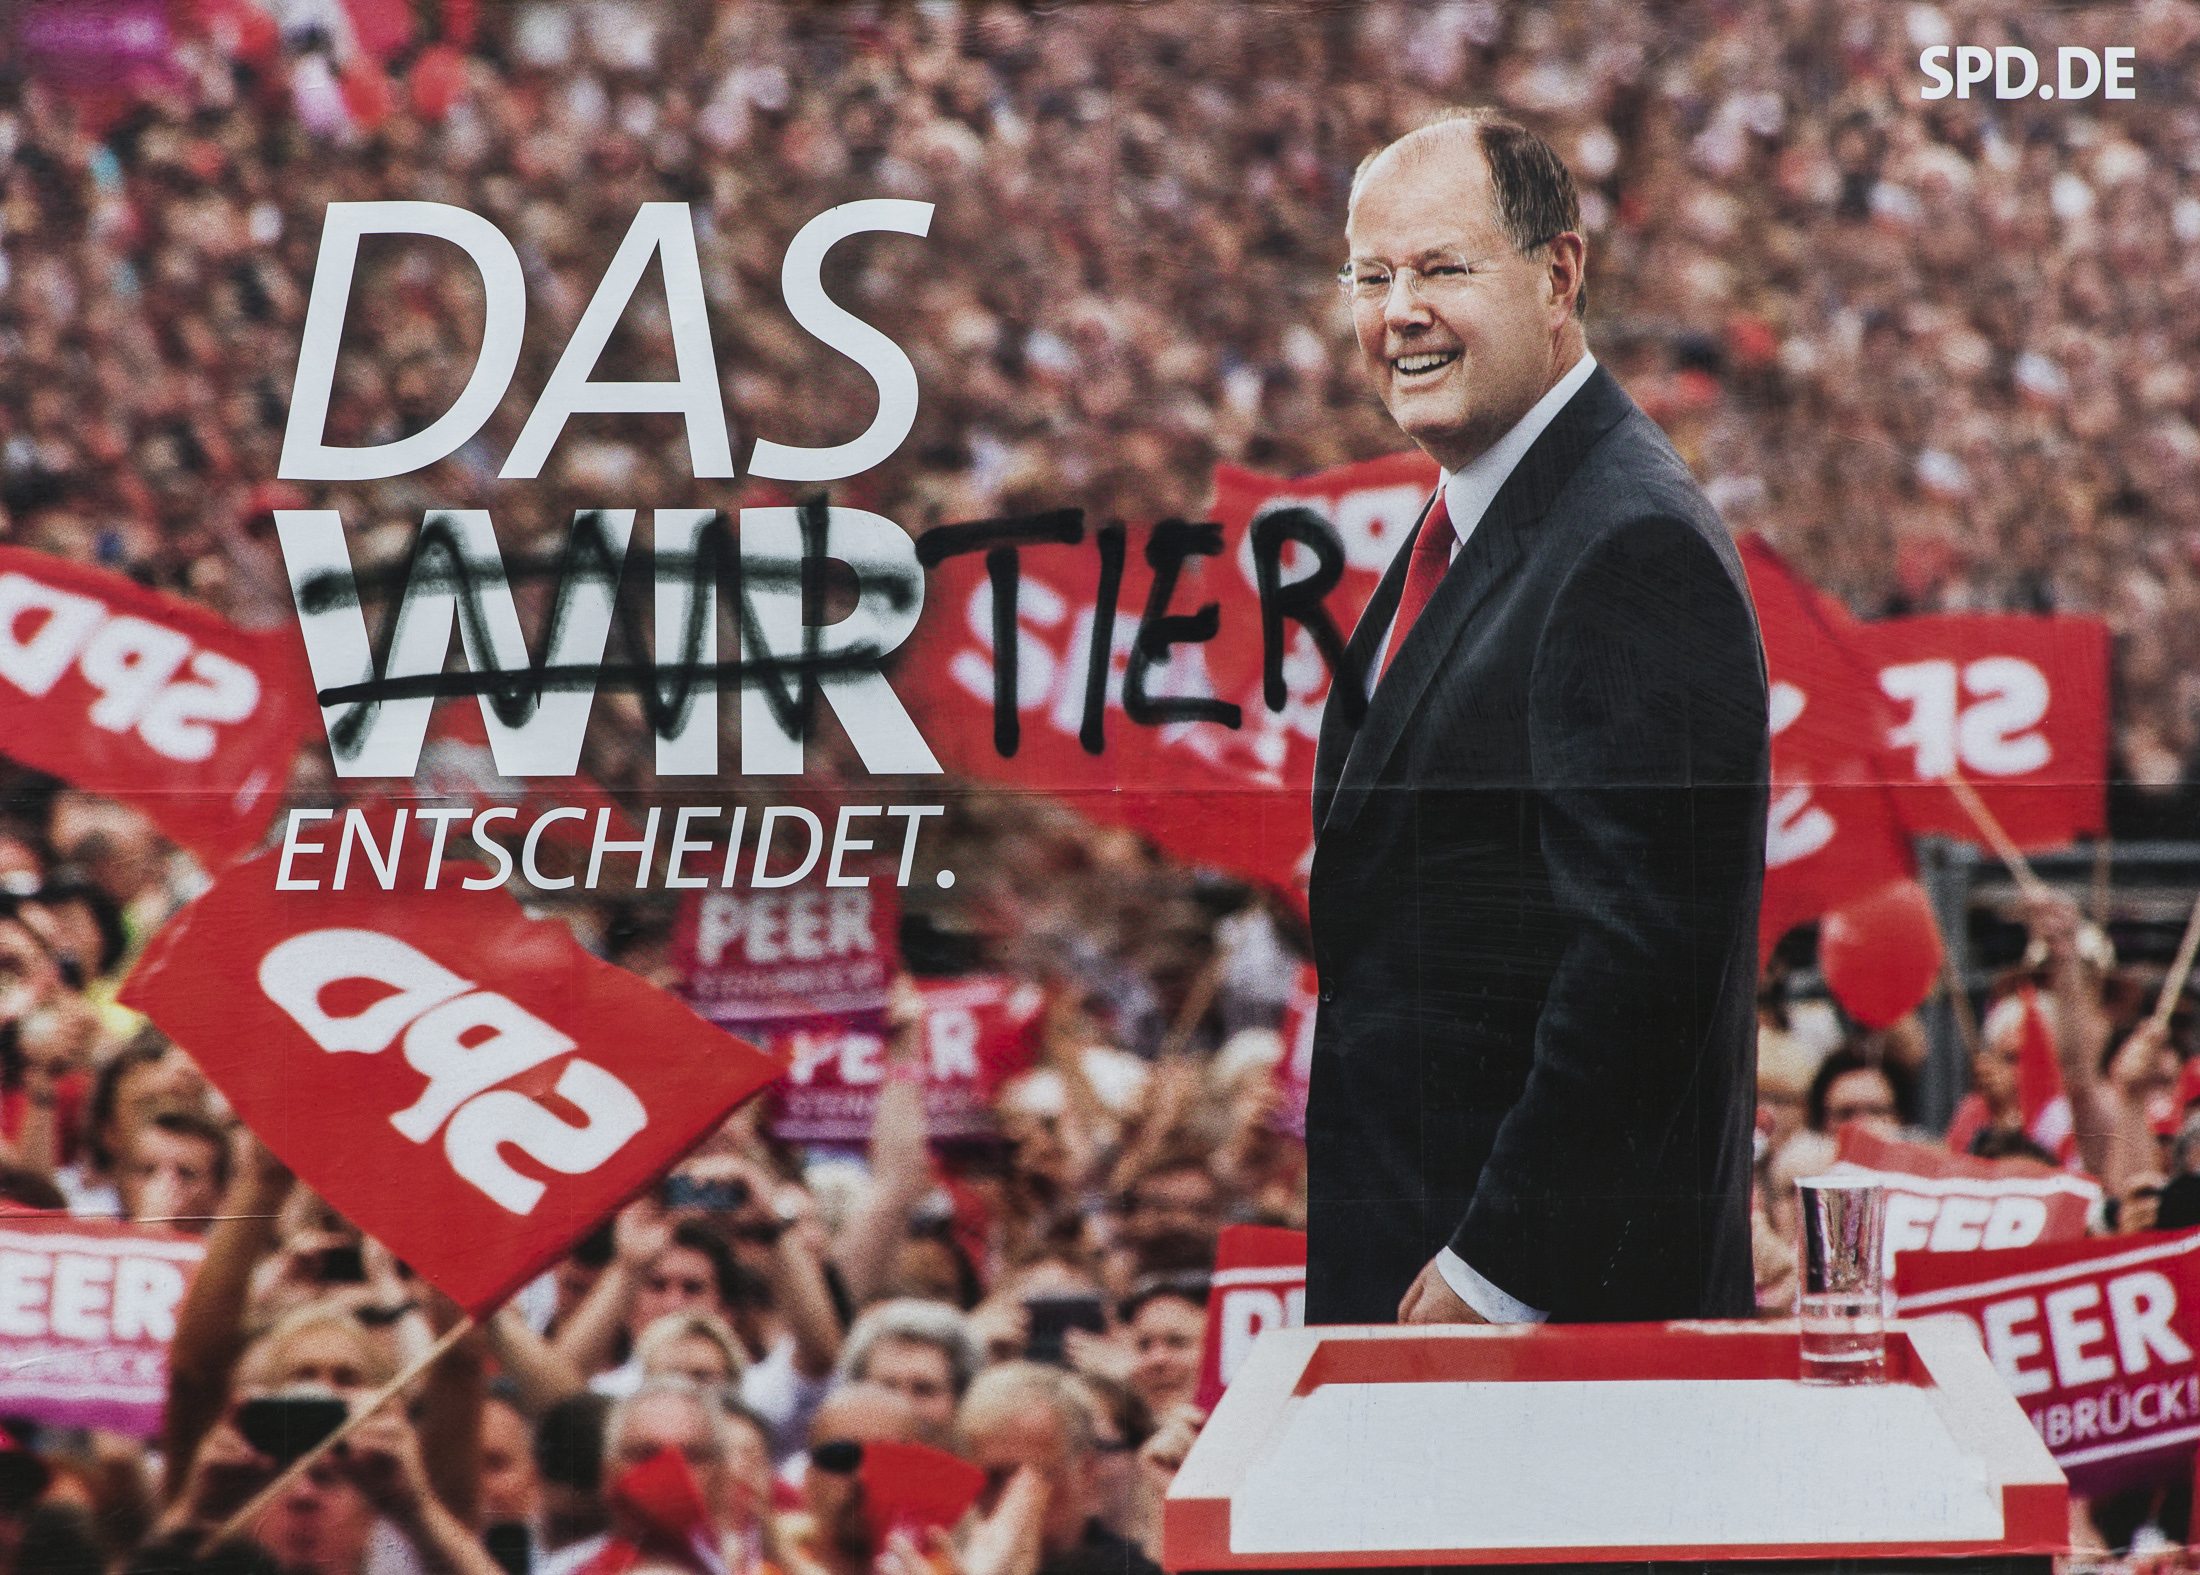 Η αφίσα των Σοσιαλδημοκρατών: Το σύνθήμα "Το ΕΜΕΙΣ αποφασίζει" έγινε "Το ζώο αποφασίζει"